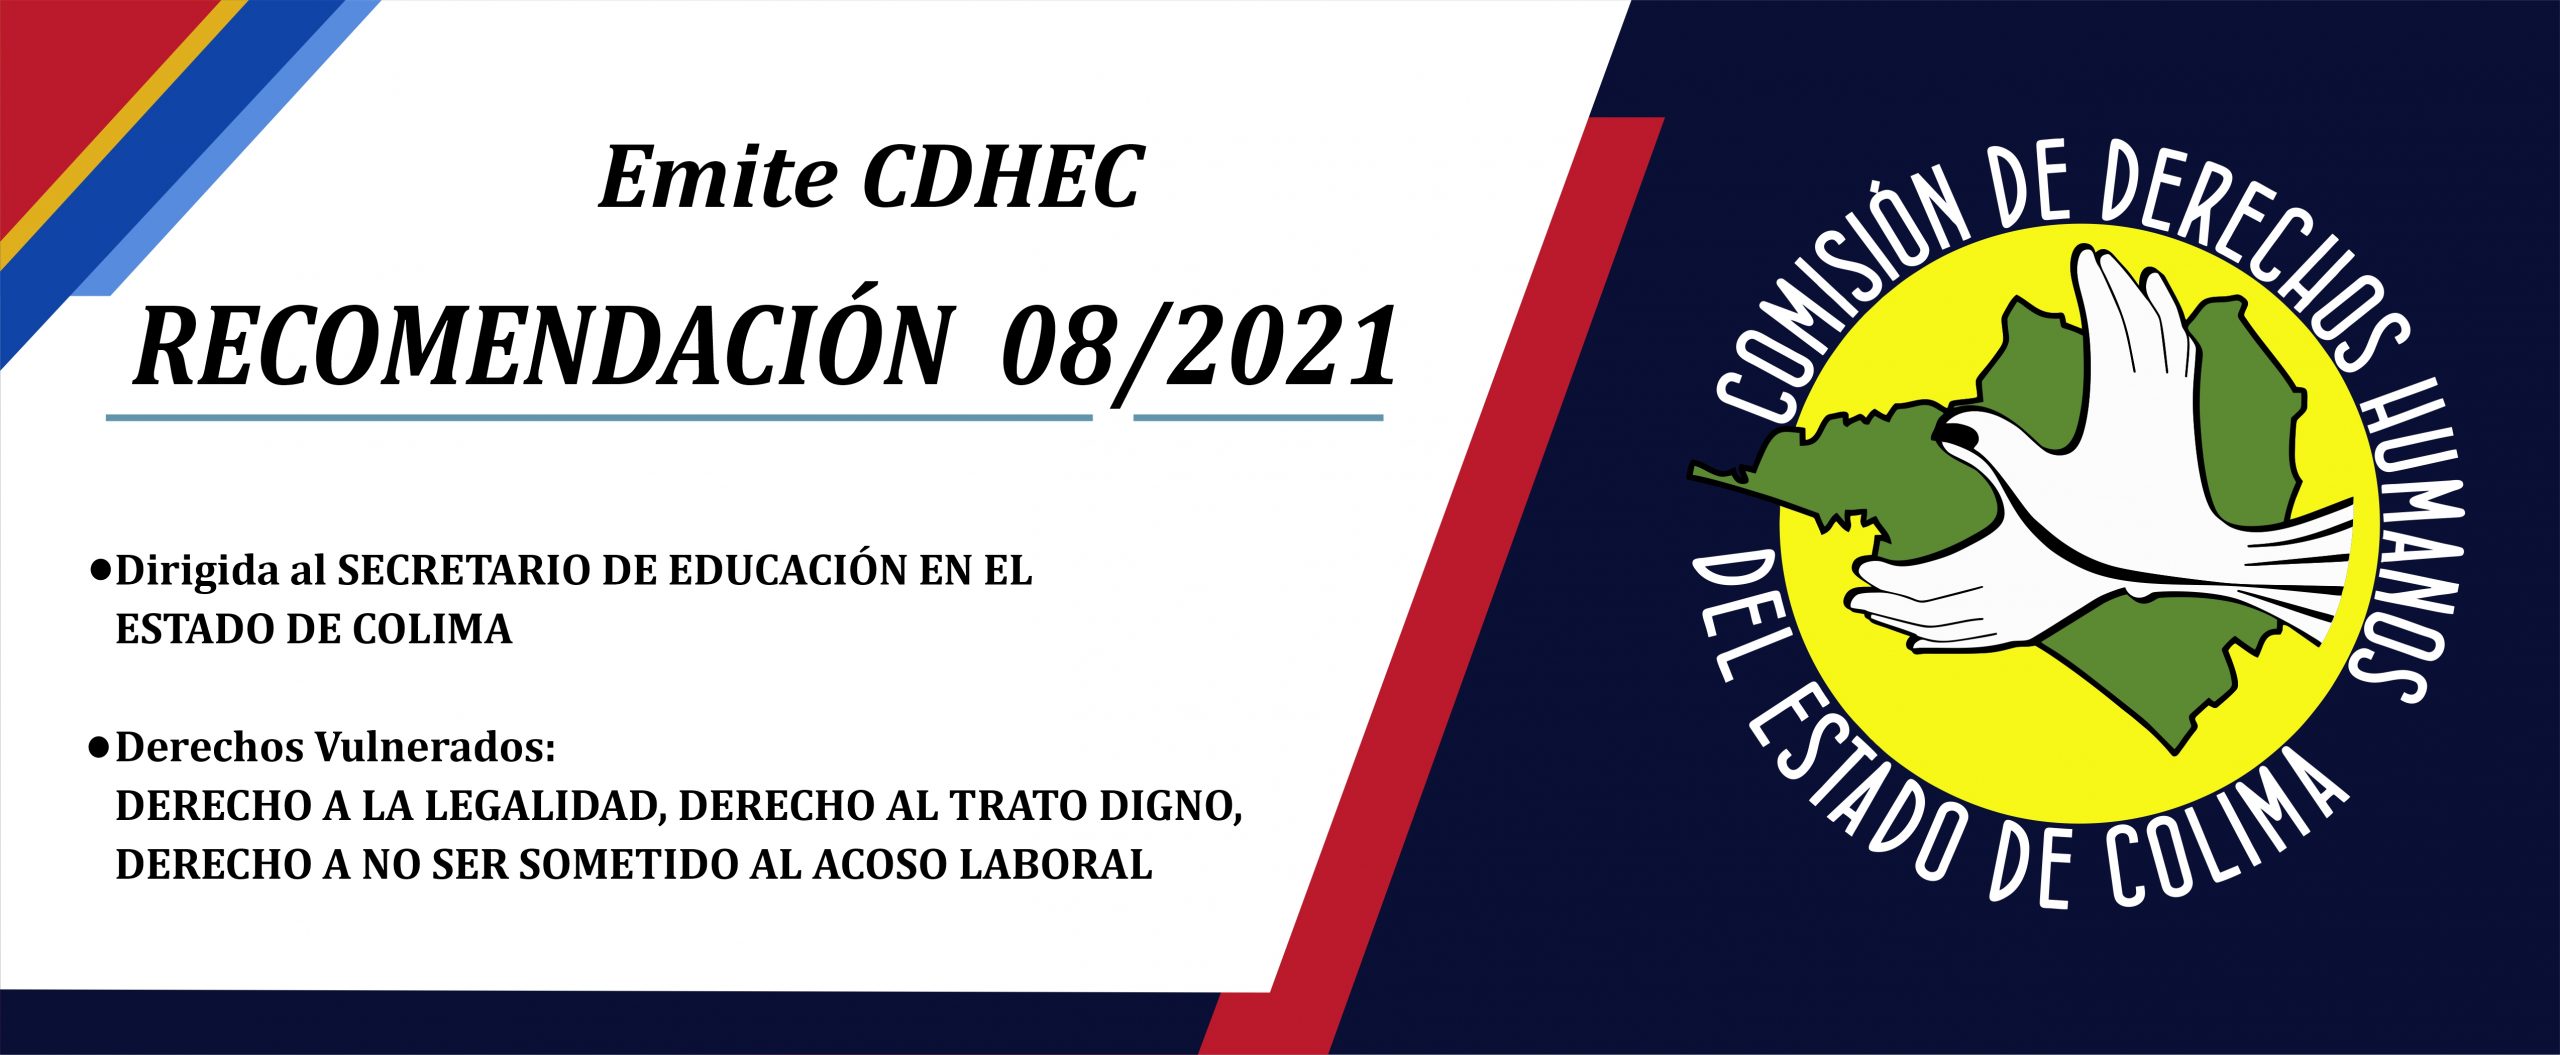 CDHEC emite Recomendación al Secretario de Educación del Estado